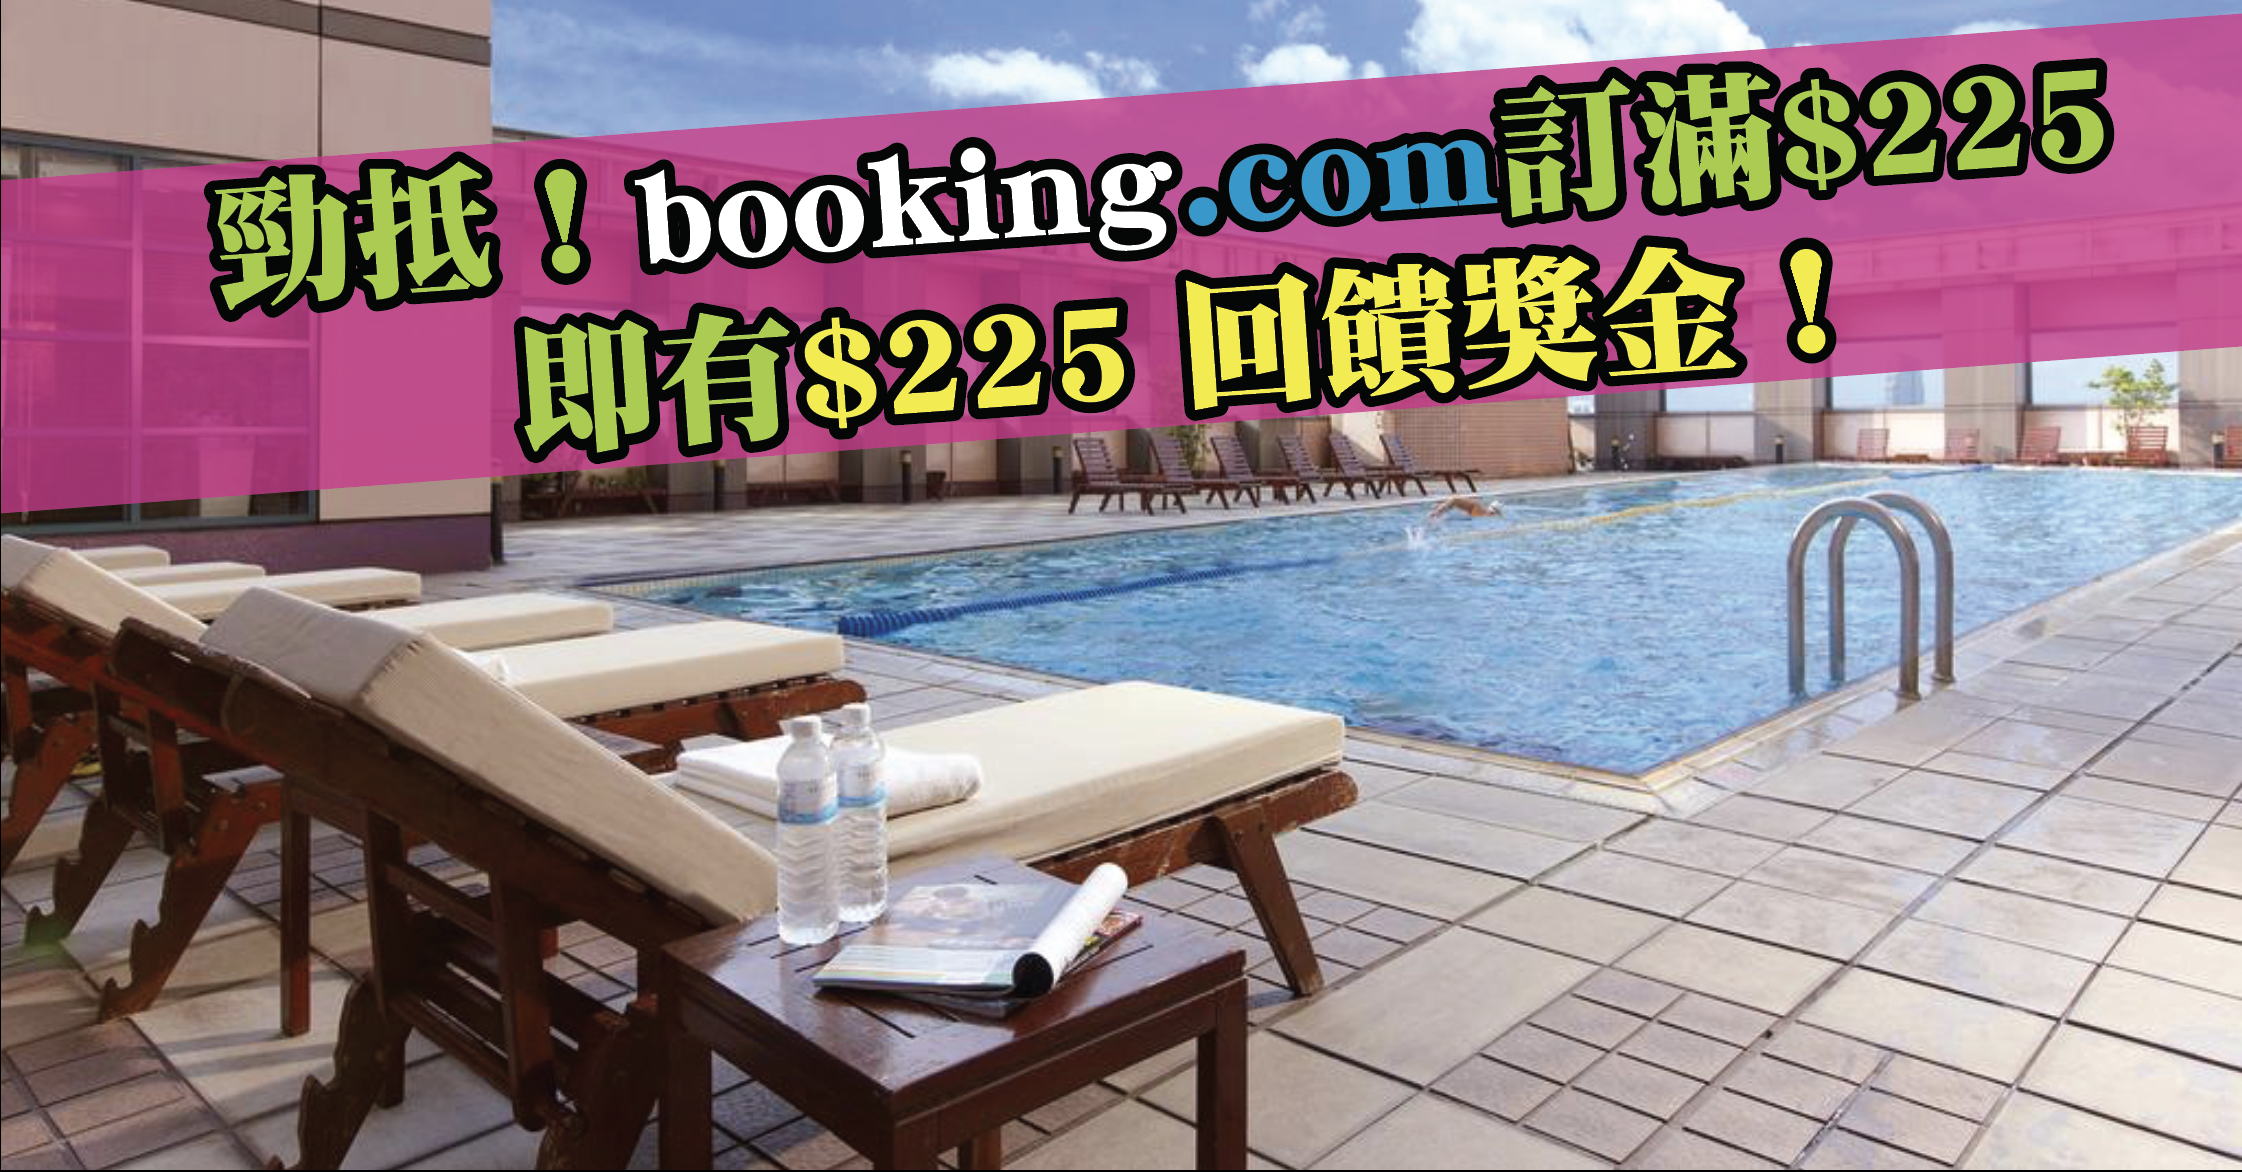 booking.com 折扣